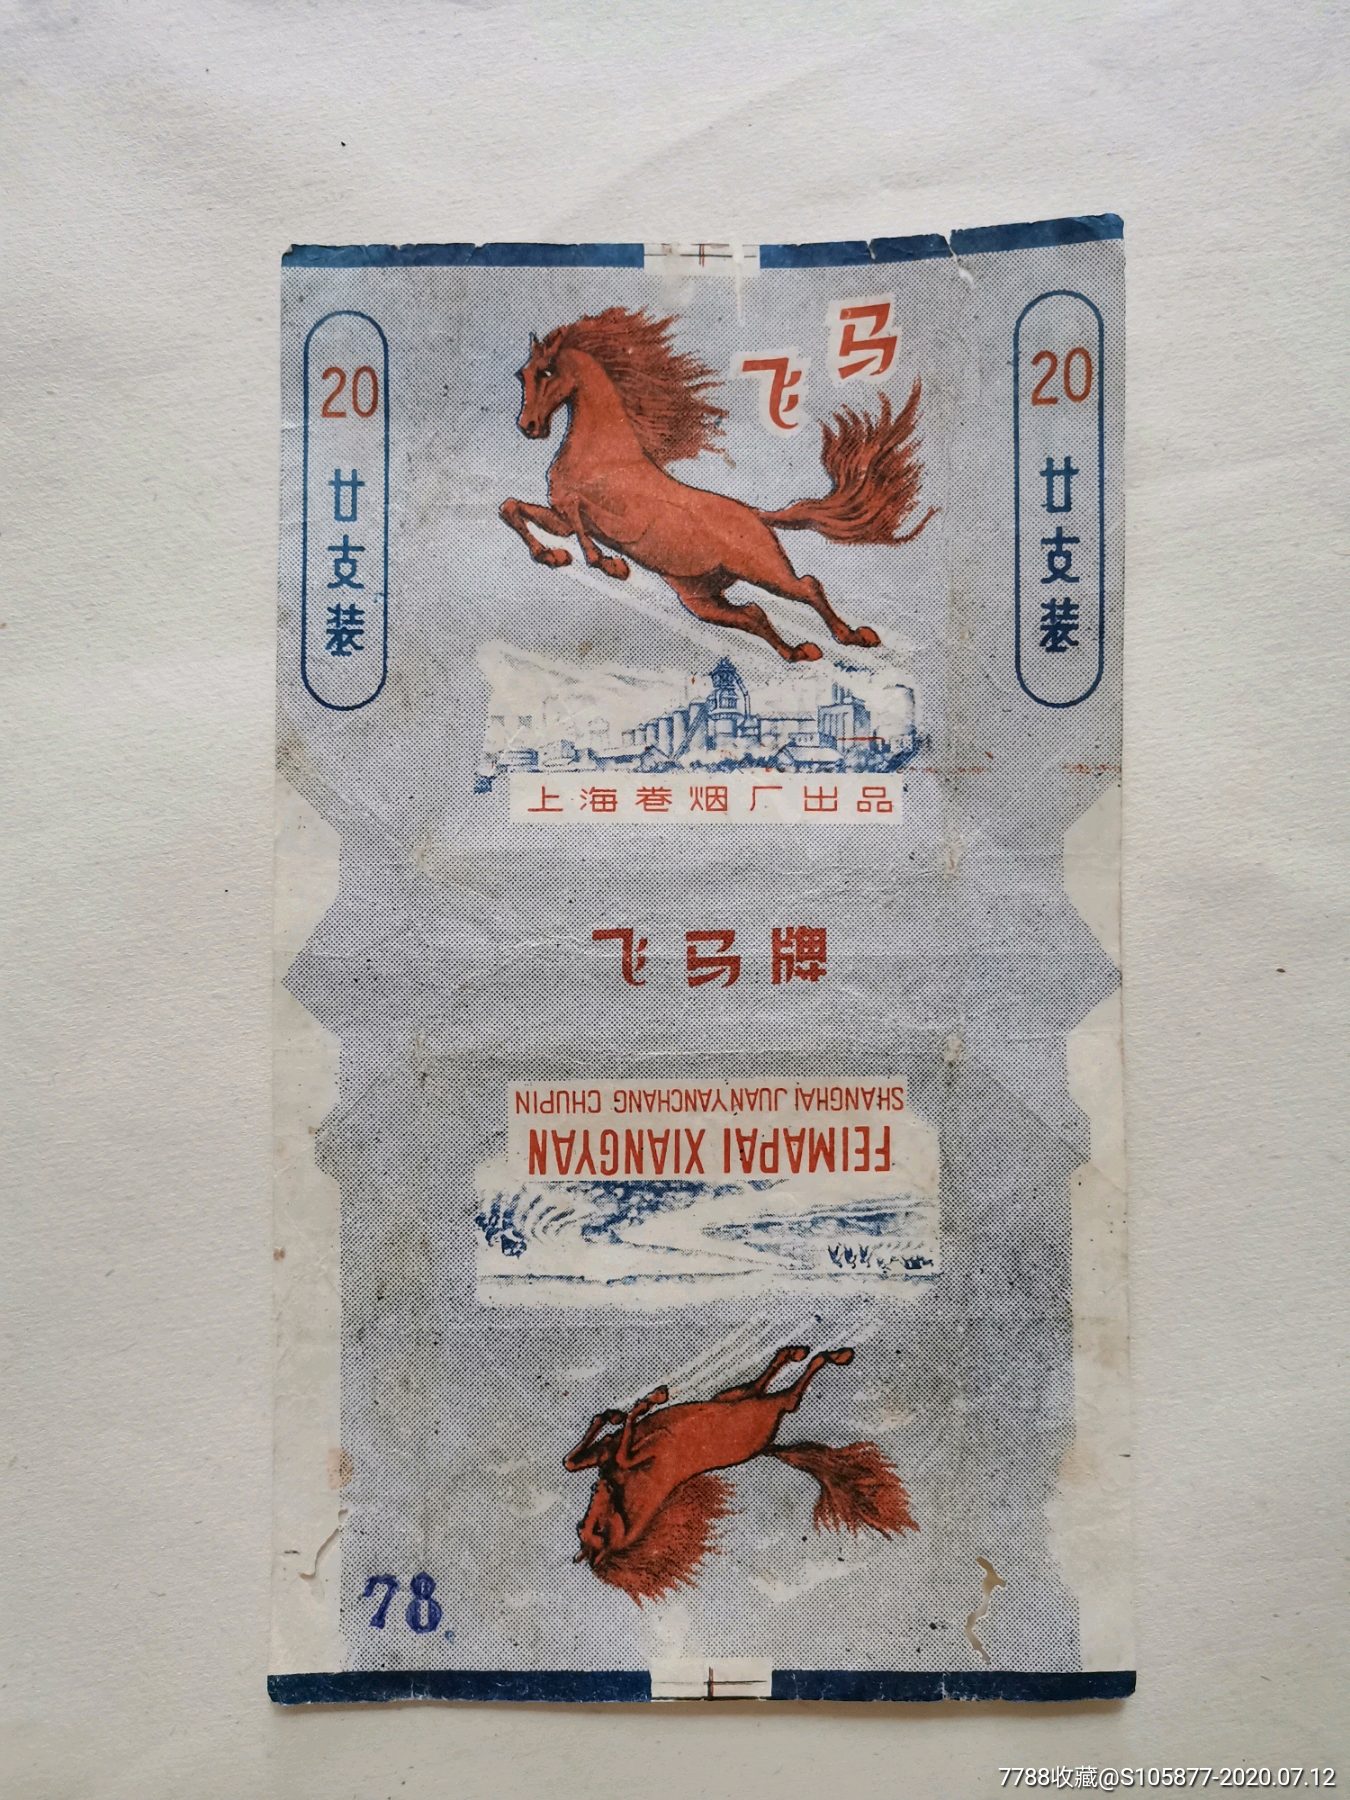 上海卷烟厂出品的飞马香烟烟标一张